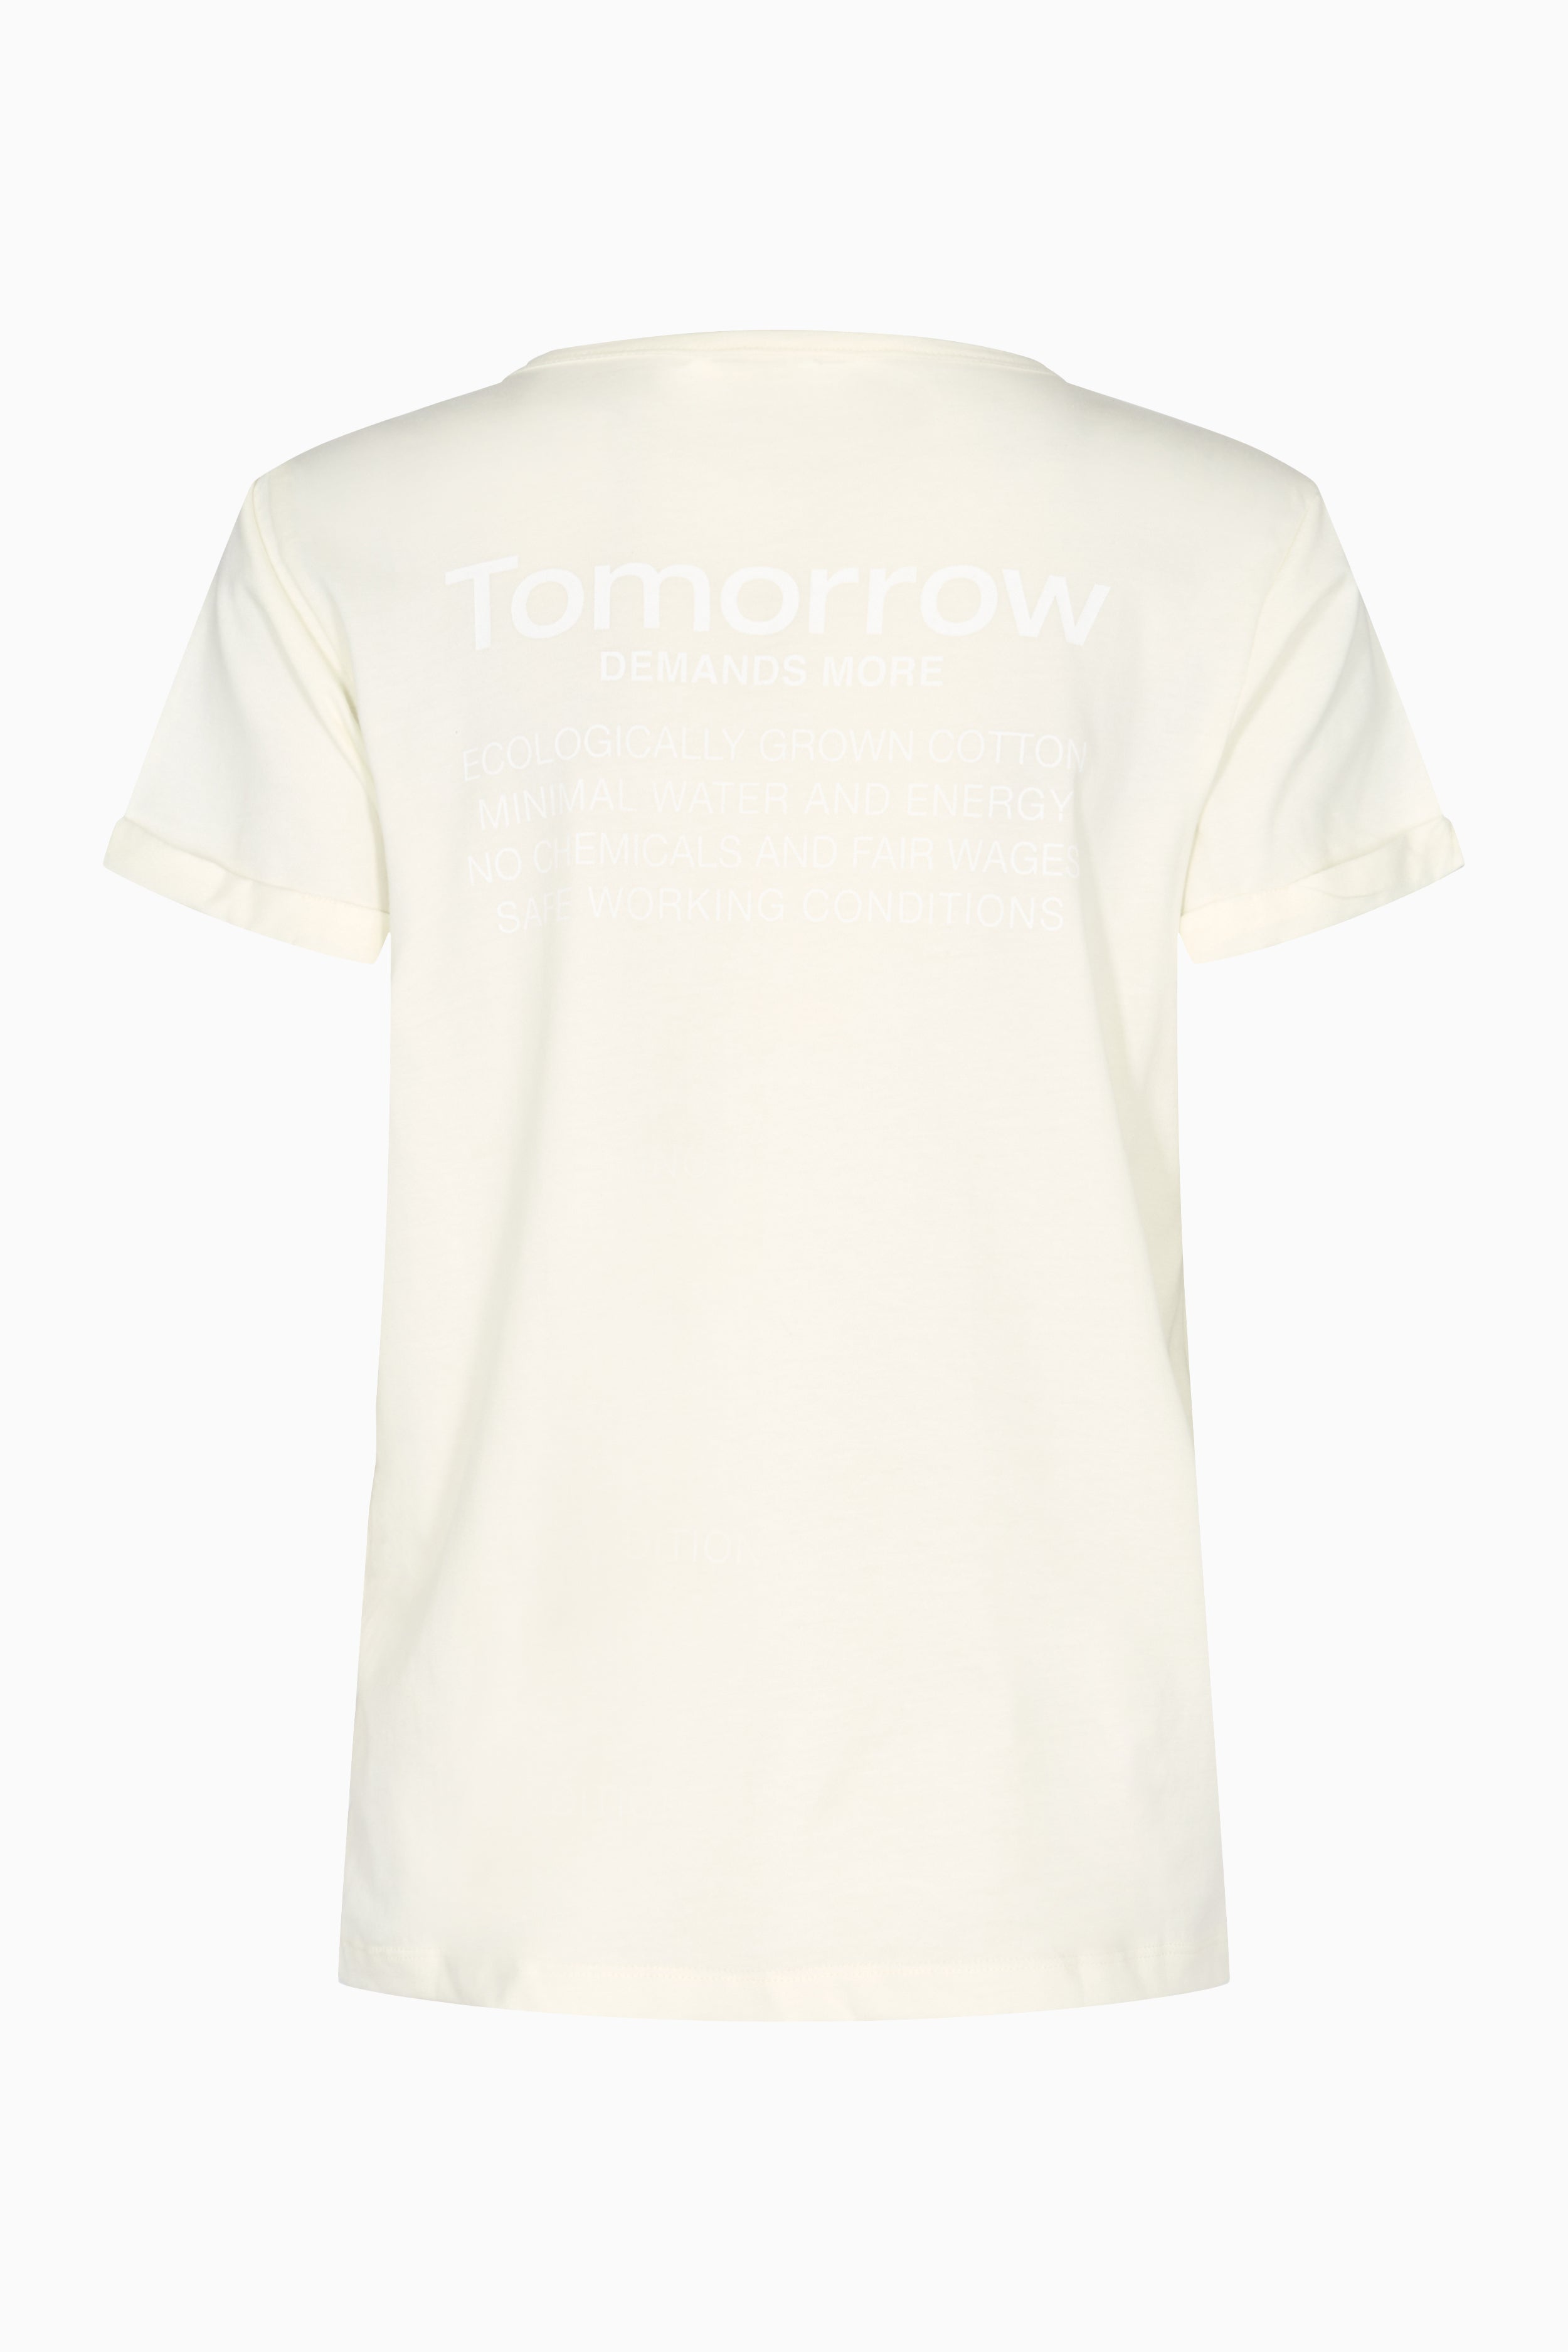 Tomorrow TRW-Logo 4 T-Shirt Tops & T-shirts 03 Ecru